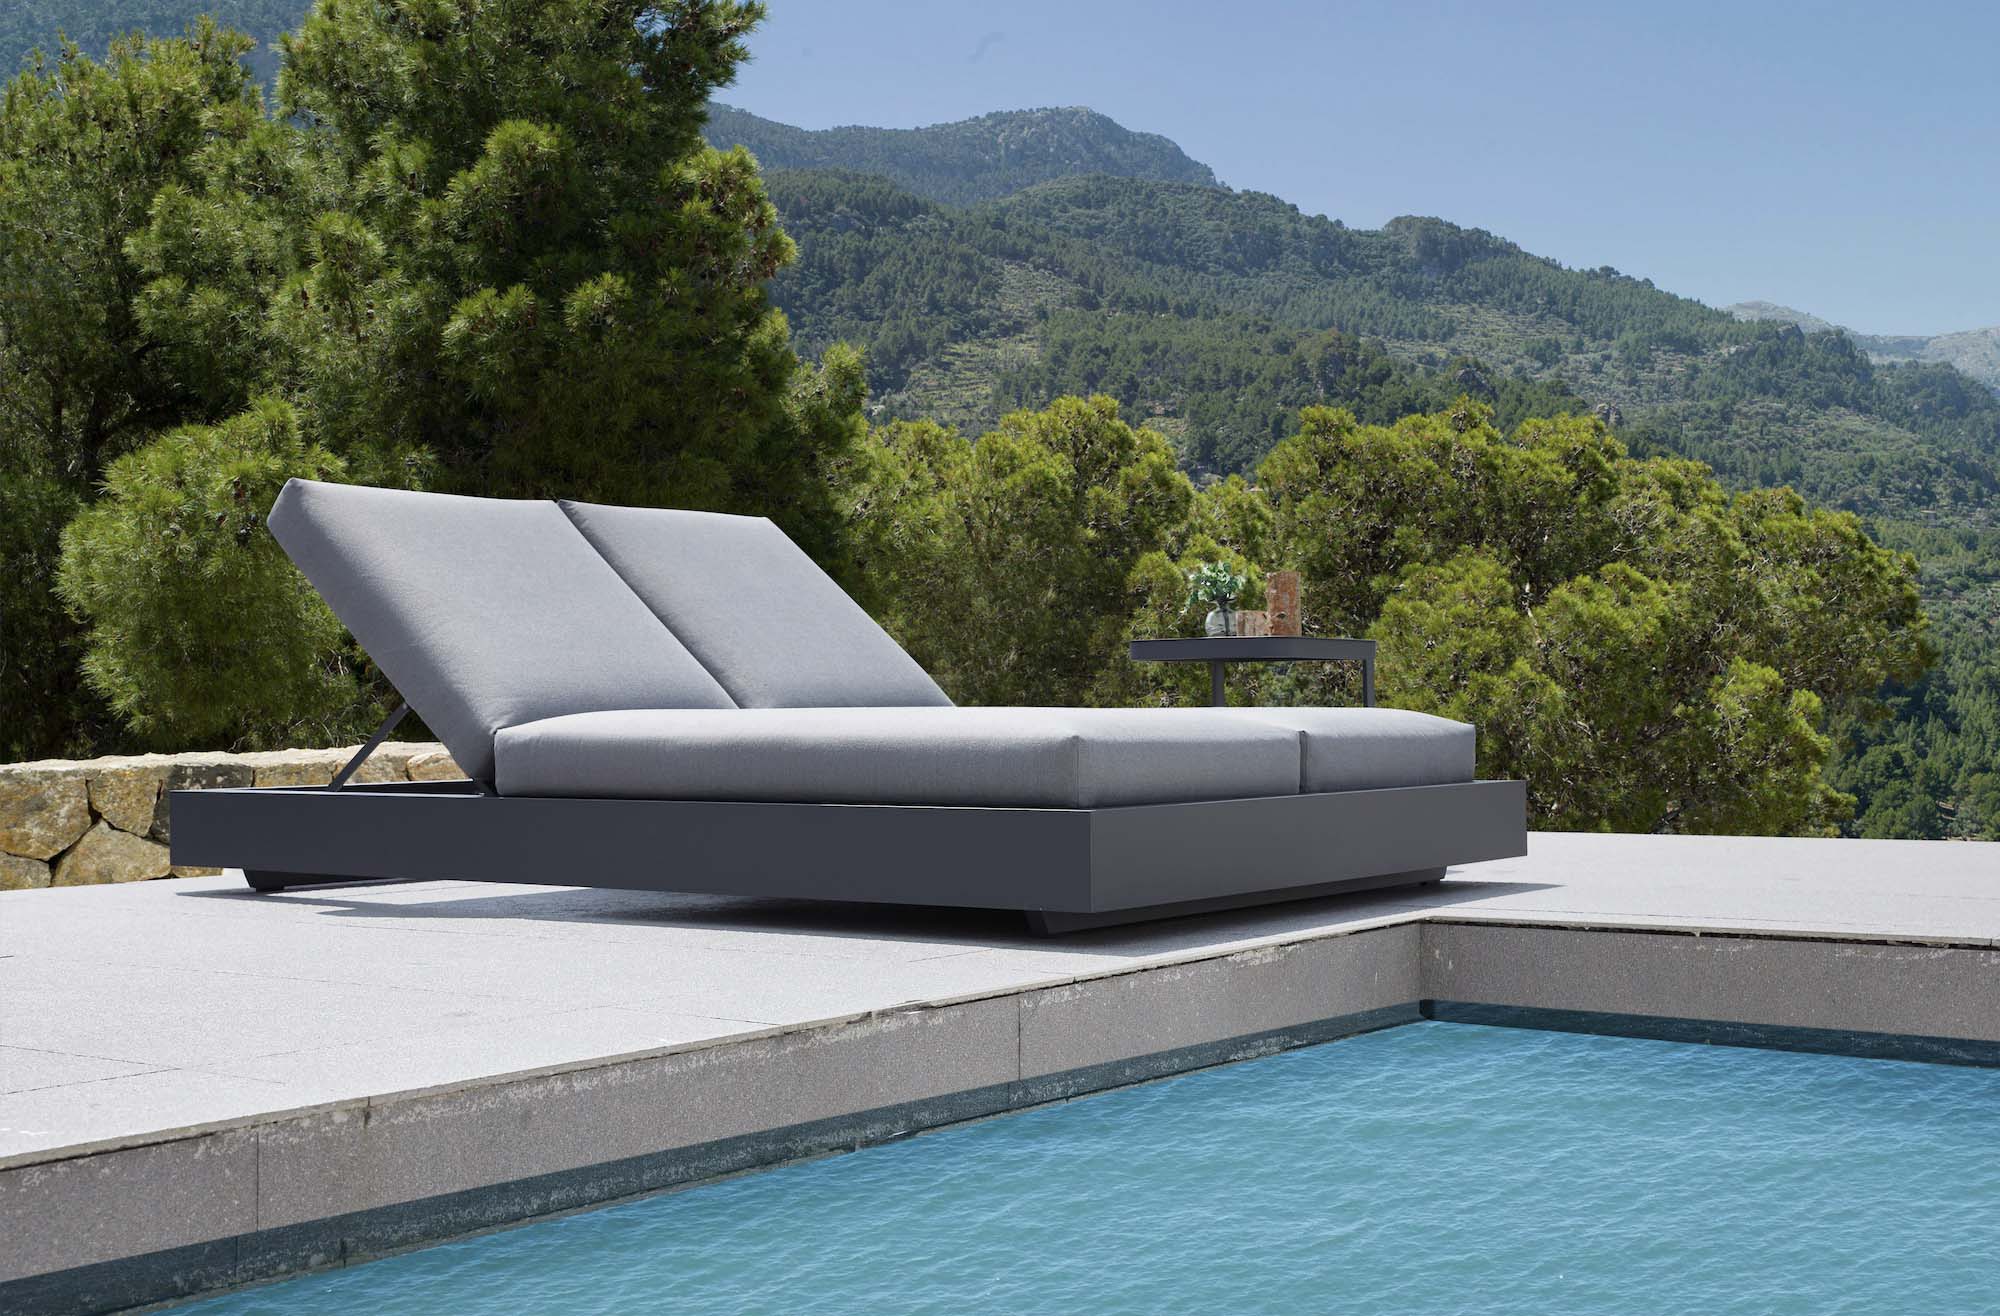 Lit extérieur / Bain de soleil transat / lit de piscine duo haut de gamme  en aluminium Fermo bed